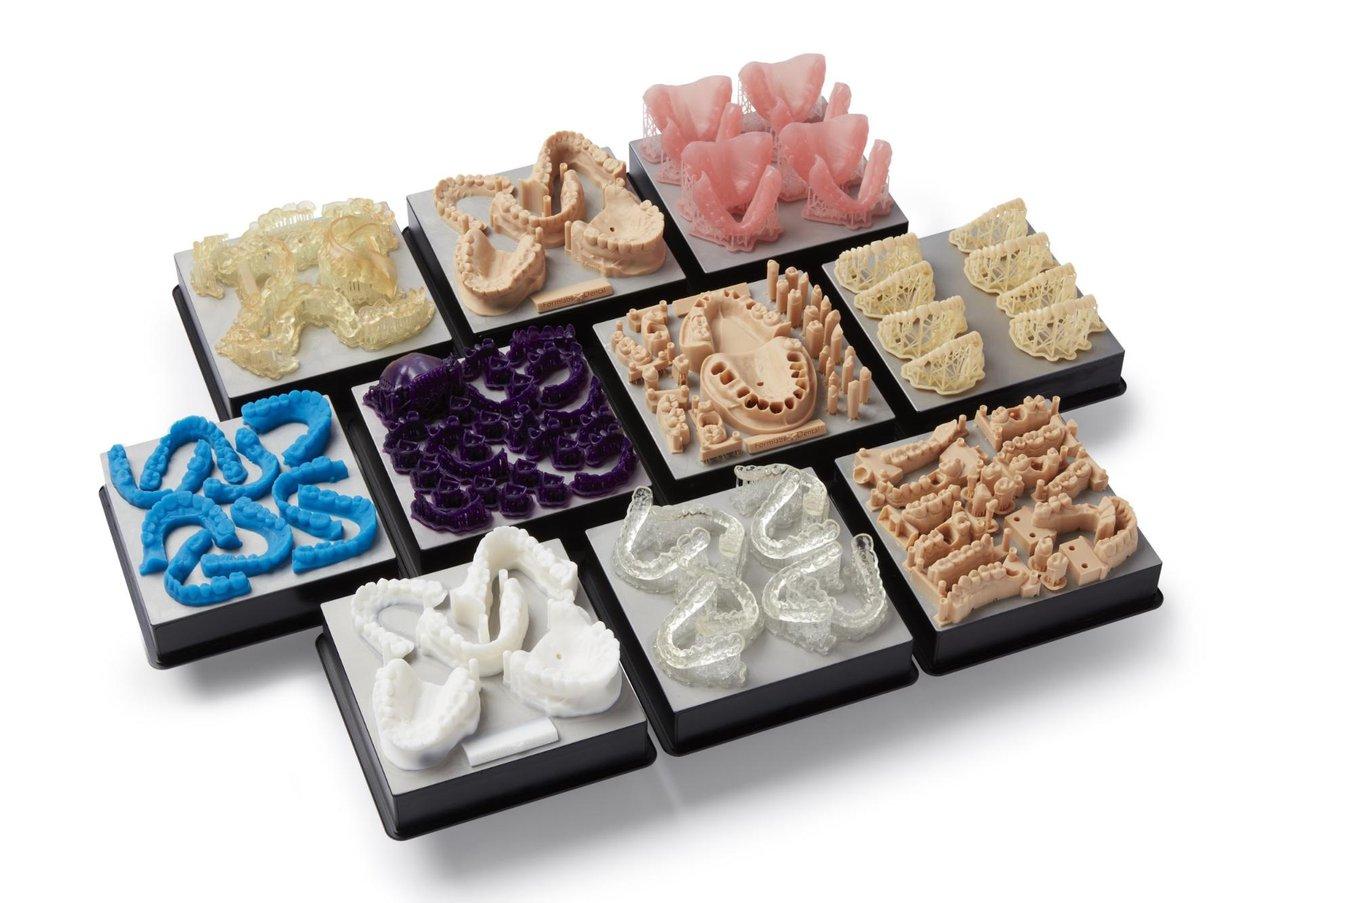 Le stampanti 3D dentali consentono di produrre su larga scala un’ampia gamma di prodotti odontoiatrici, in modo economico e personalizzato.